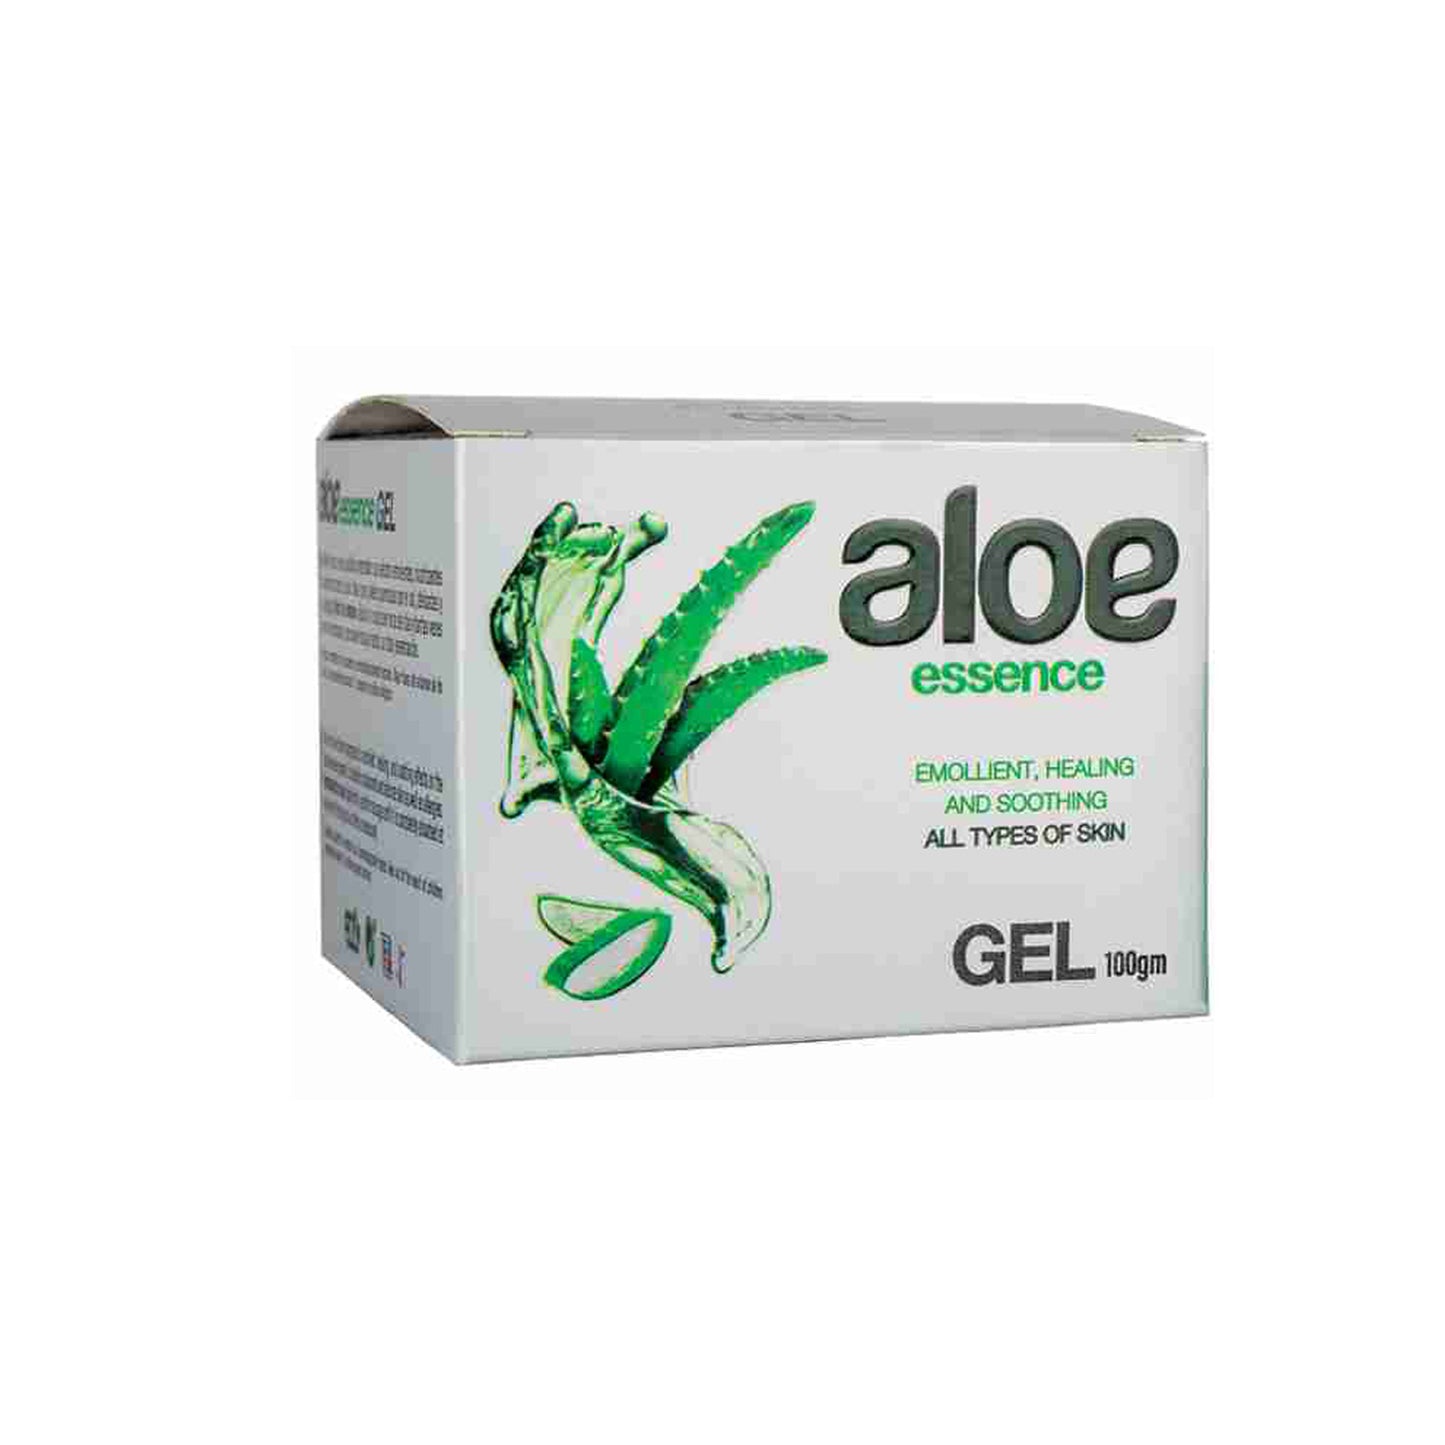 Aloe Essence Gel, 100gm